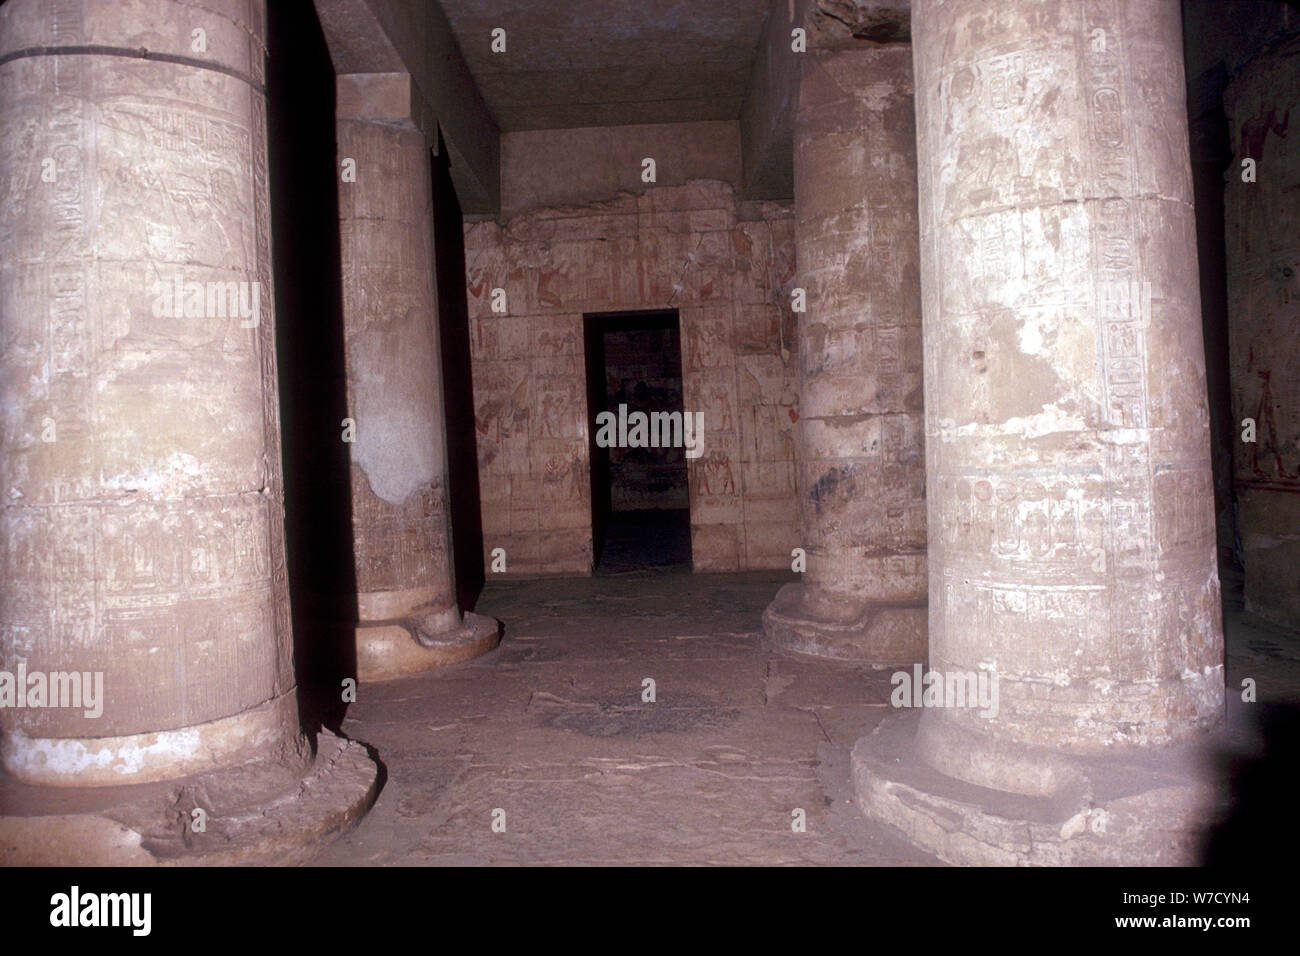 Intérieur du Temple de Sethos Seti I (I), Abydos, Egypte, 19e dynastie, c1280 BC. Artiste : Inconnu Banque D'Images